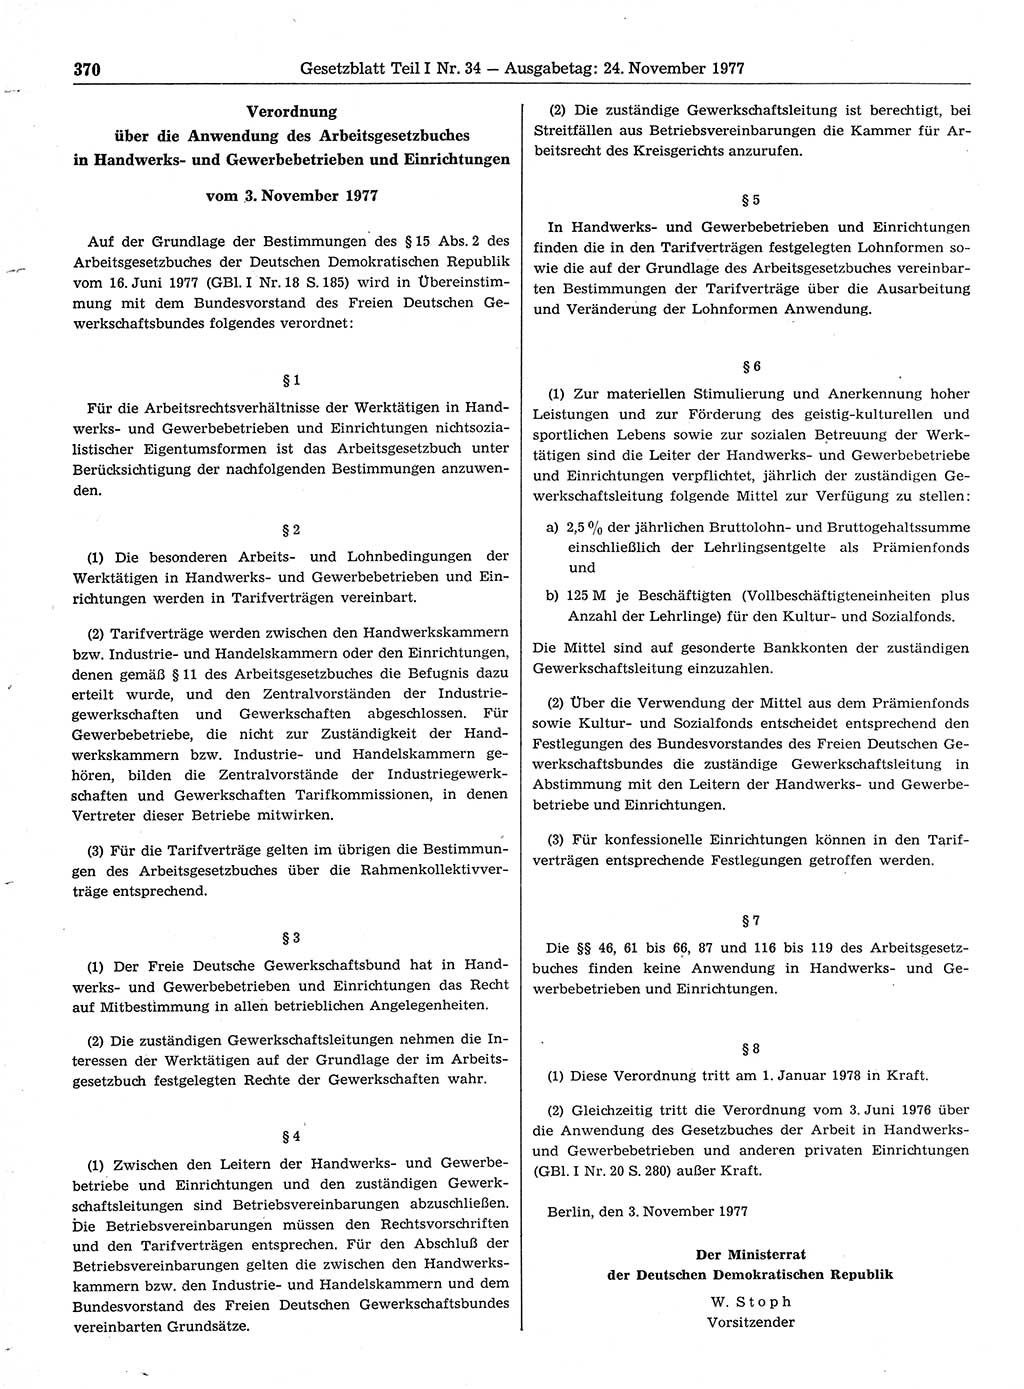 Gesetzblatt (GBl.) der Deutschen Demokratischen Republik (DDR) Teil Ⅰ 1977, Seite 370 (GBl. DDR Ⅰ 1977, S. 370)